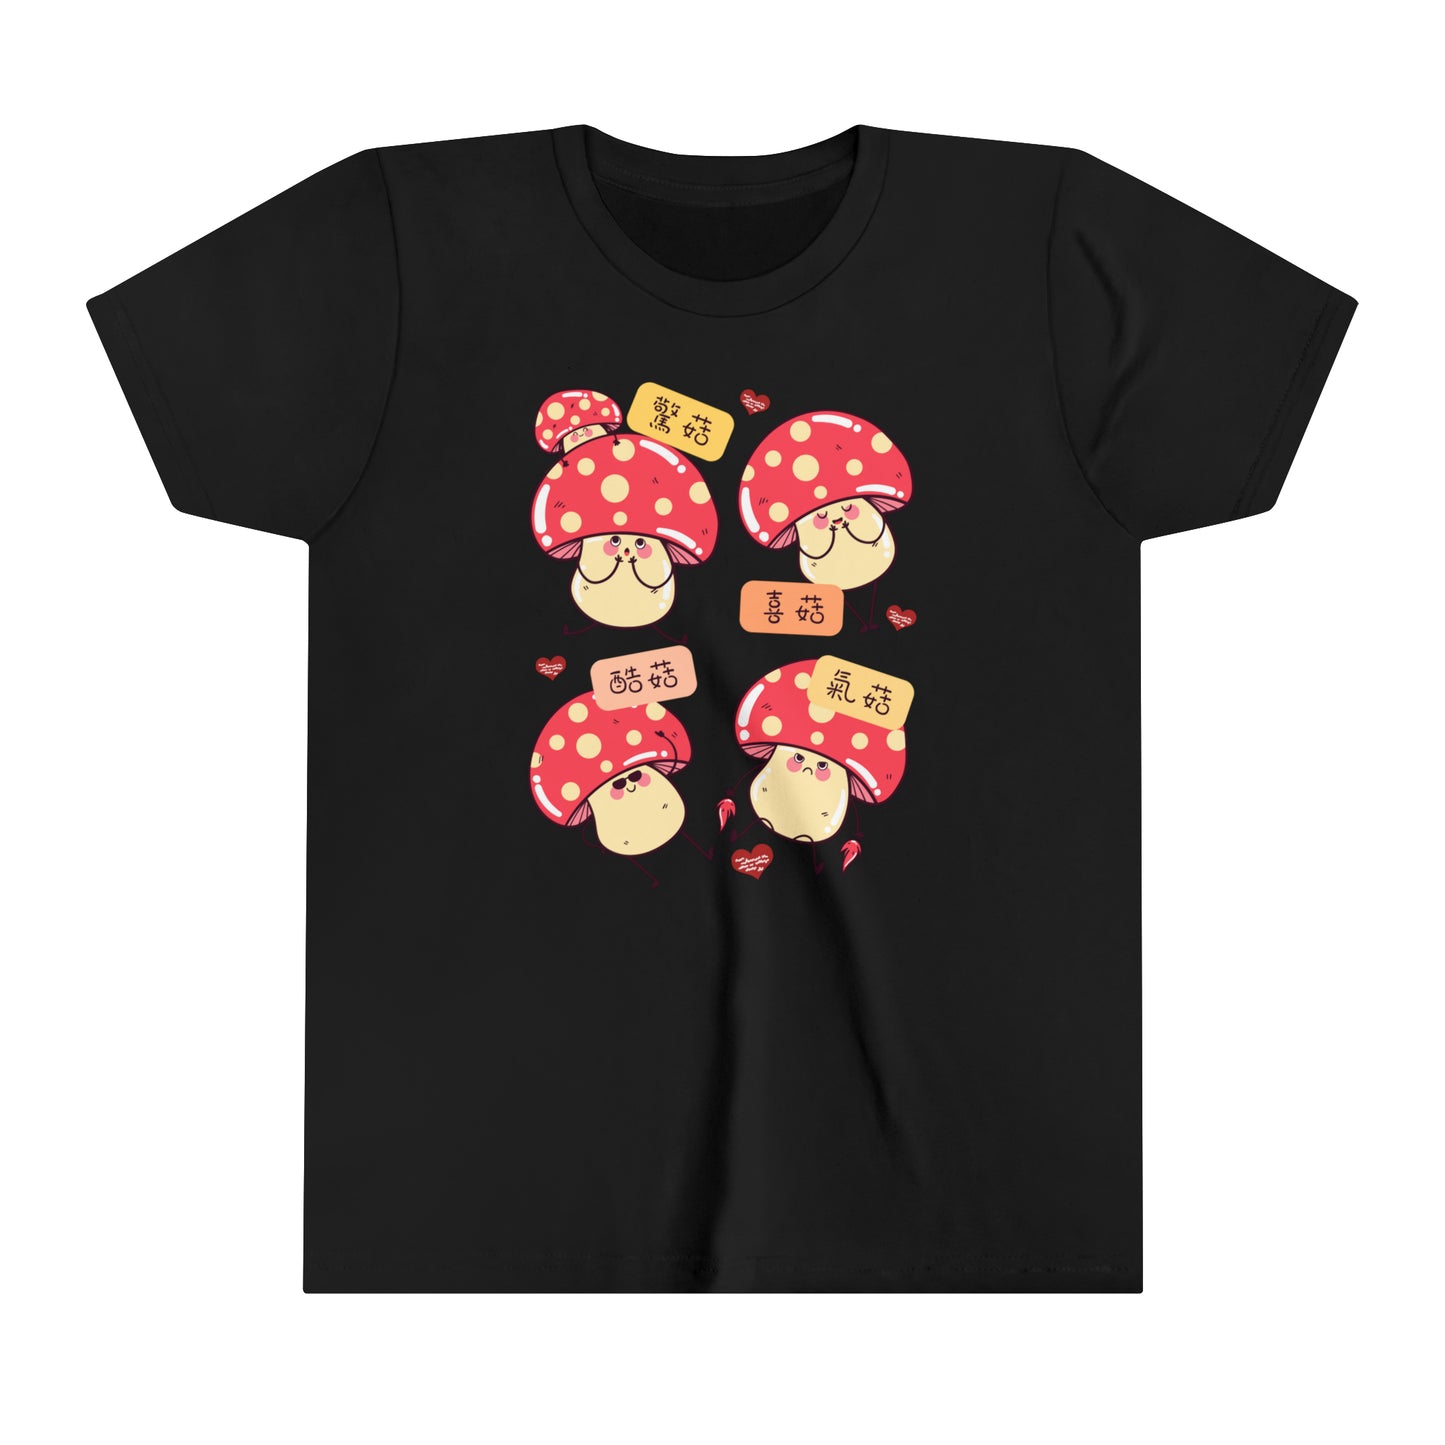 Kids Oh Mushrooms! Idioms T-Shirts